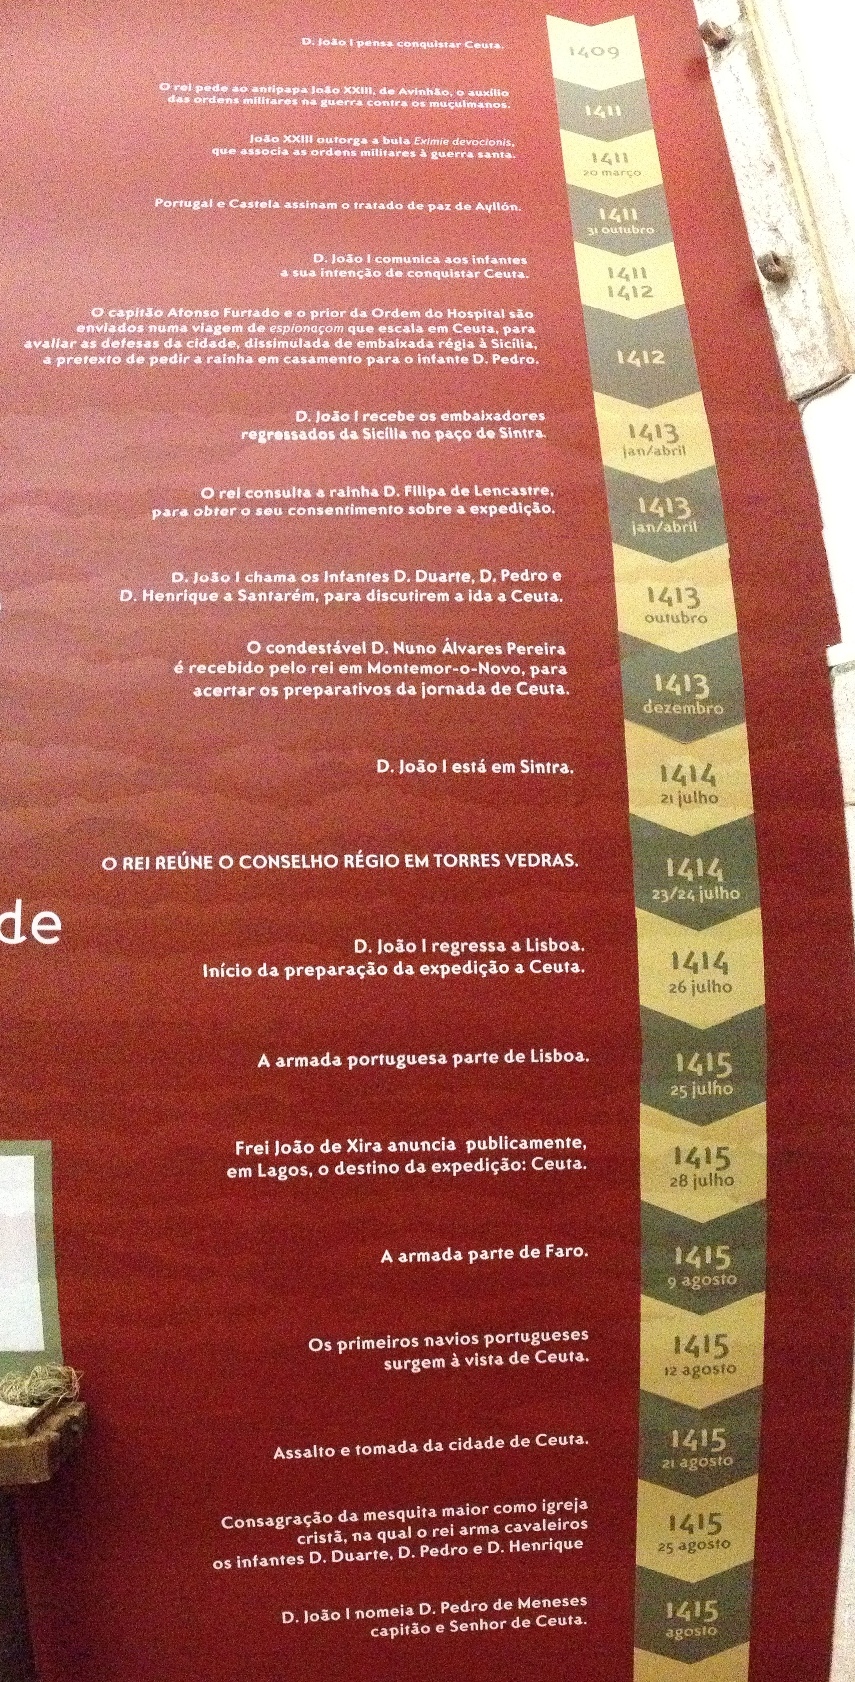 Fita de Tempo da Conquista de Ceuta, exposta na exposição "Torres Vedras no caminho de Ceuta. 600 anos", no Museu Municipal Leonel Trindade nesta cidade, até 10 de Outubro (Clique na imagem e leia em detalhe).